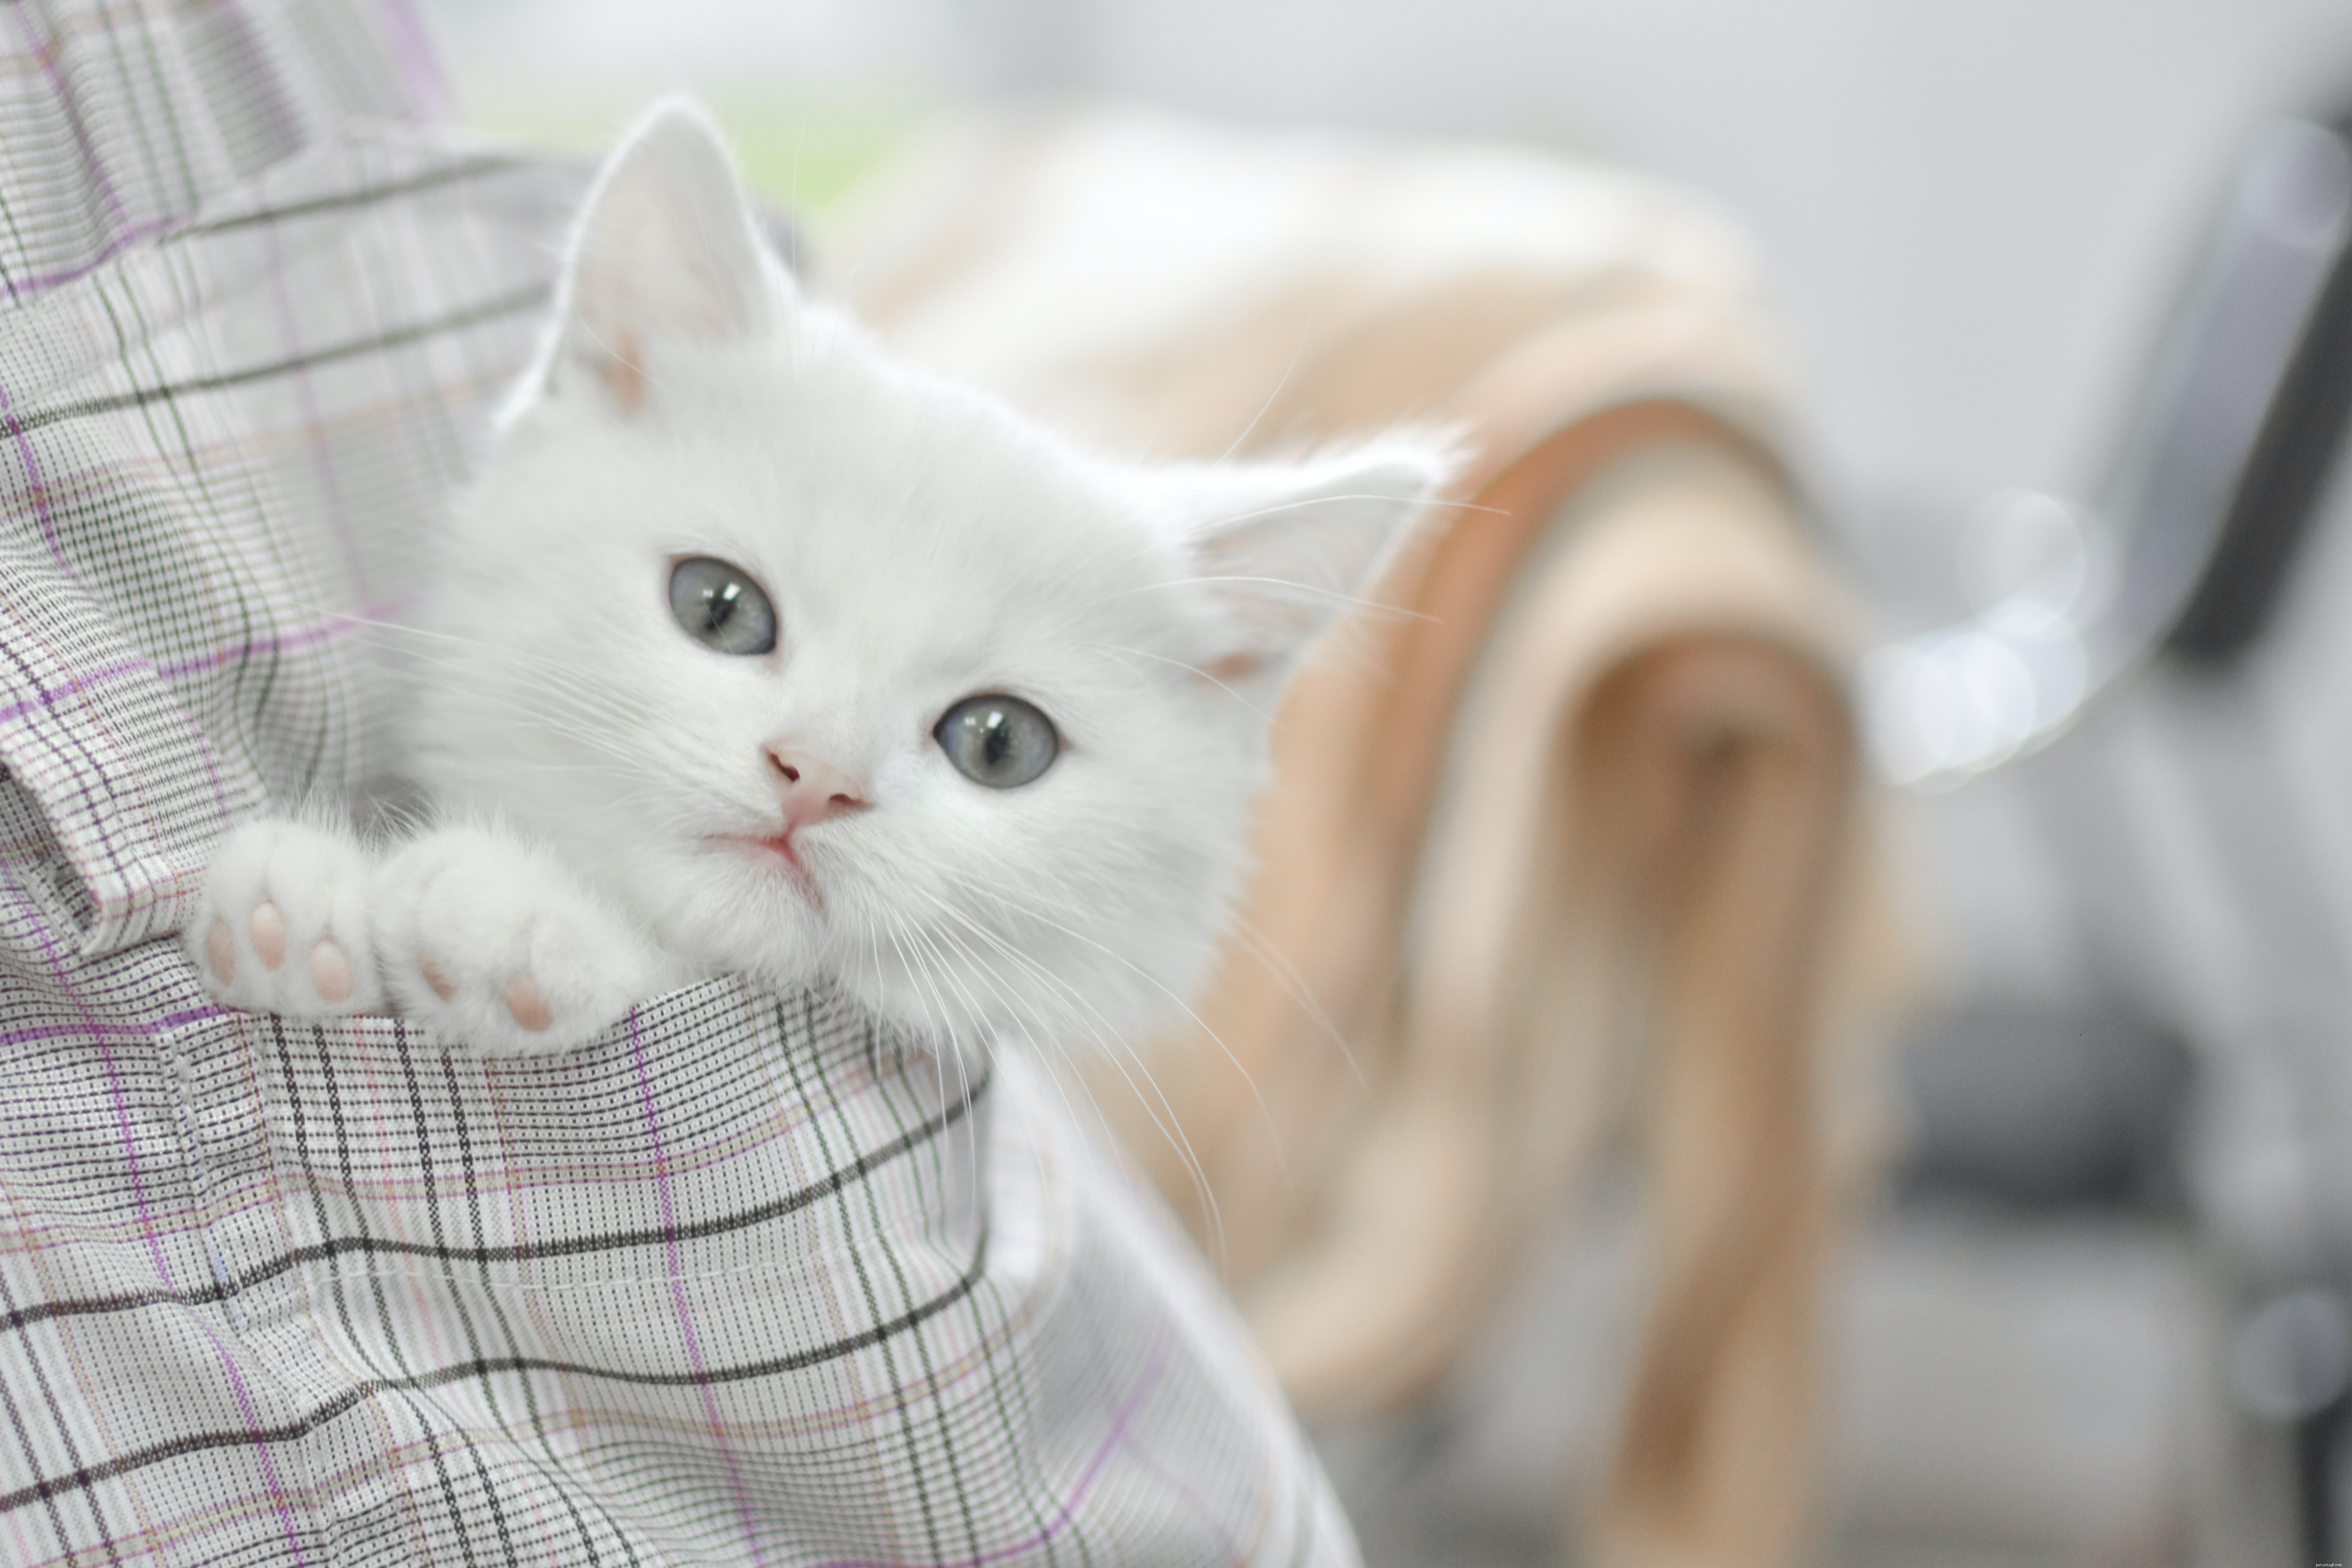 O que é melhor – adotar um gato ou comprar um gatinho?